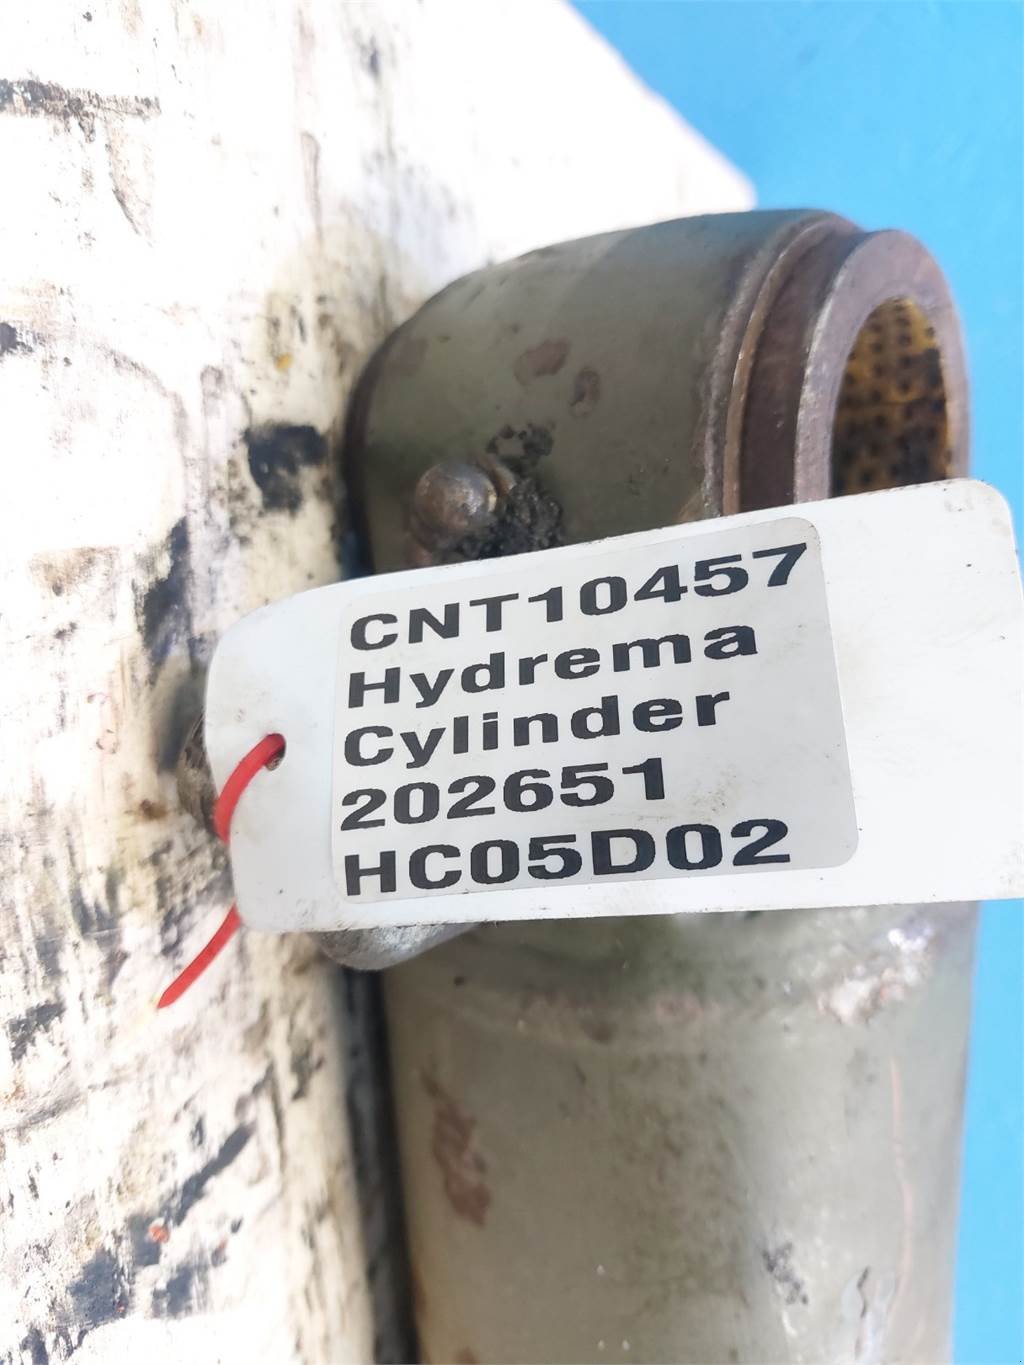 Schaufel des Typs Hydrema 906B, Gebrauchtmaschine in Hemmet (Bild 7)